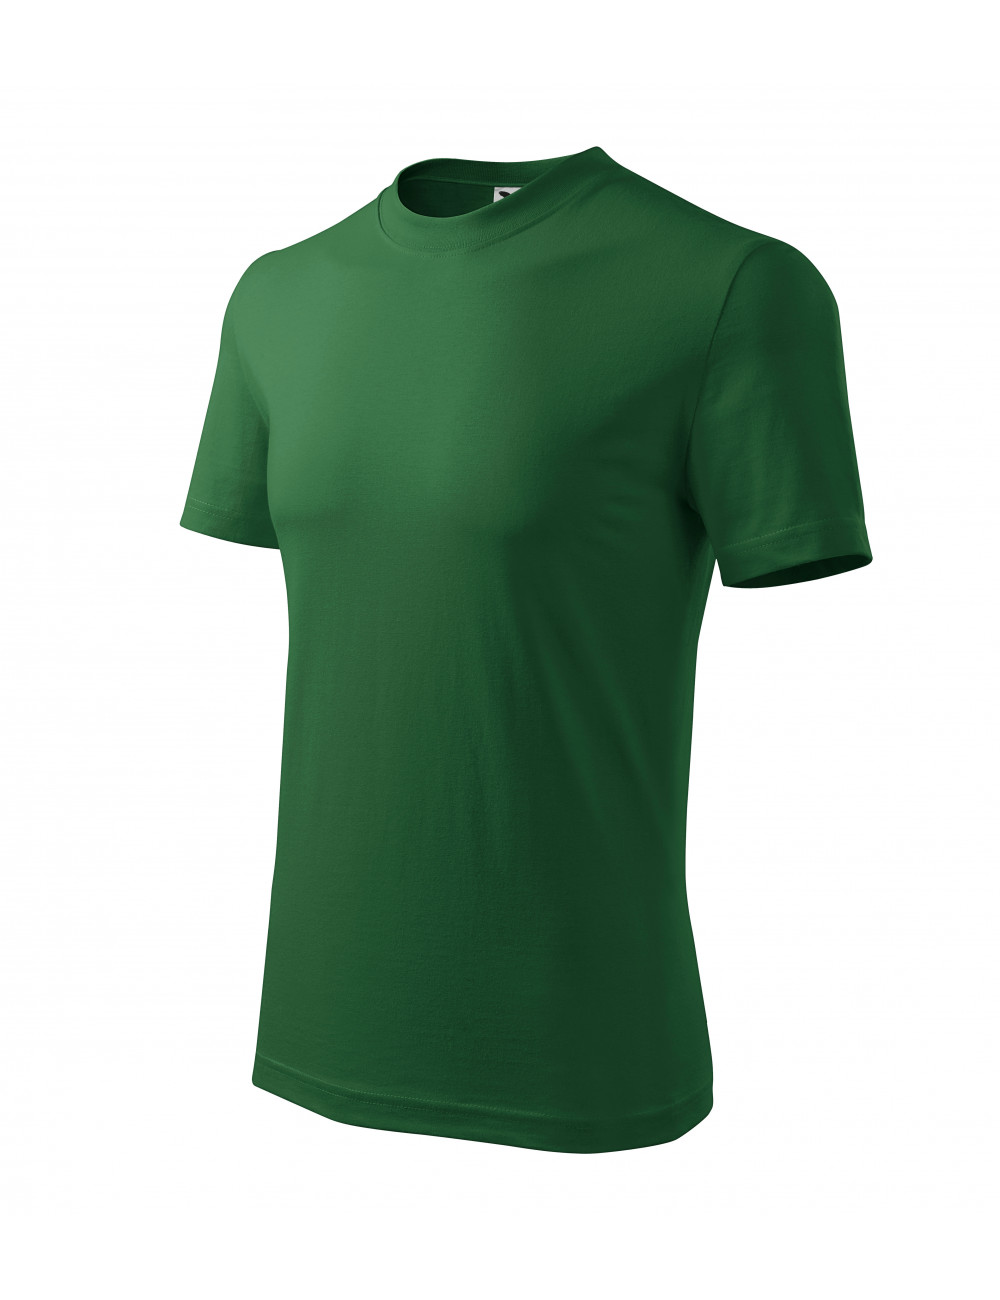 Unisex t-shirt classic 101 bottle green Adler Malfini